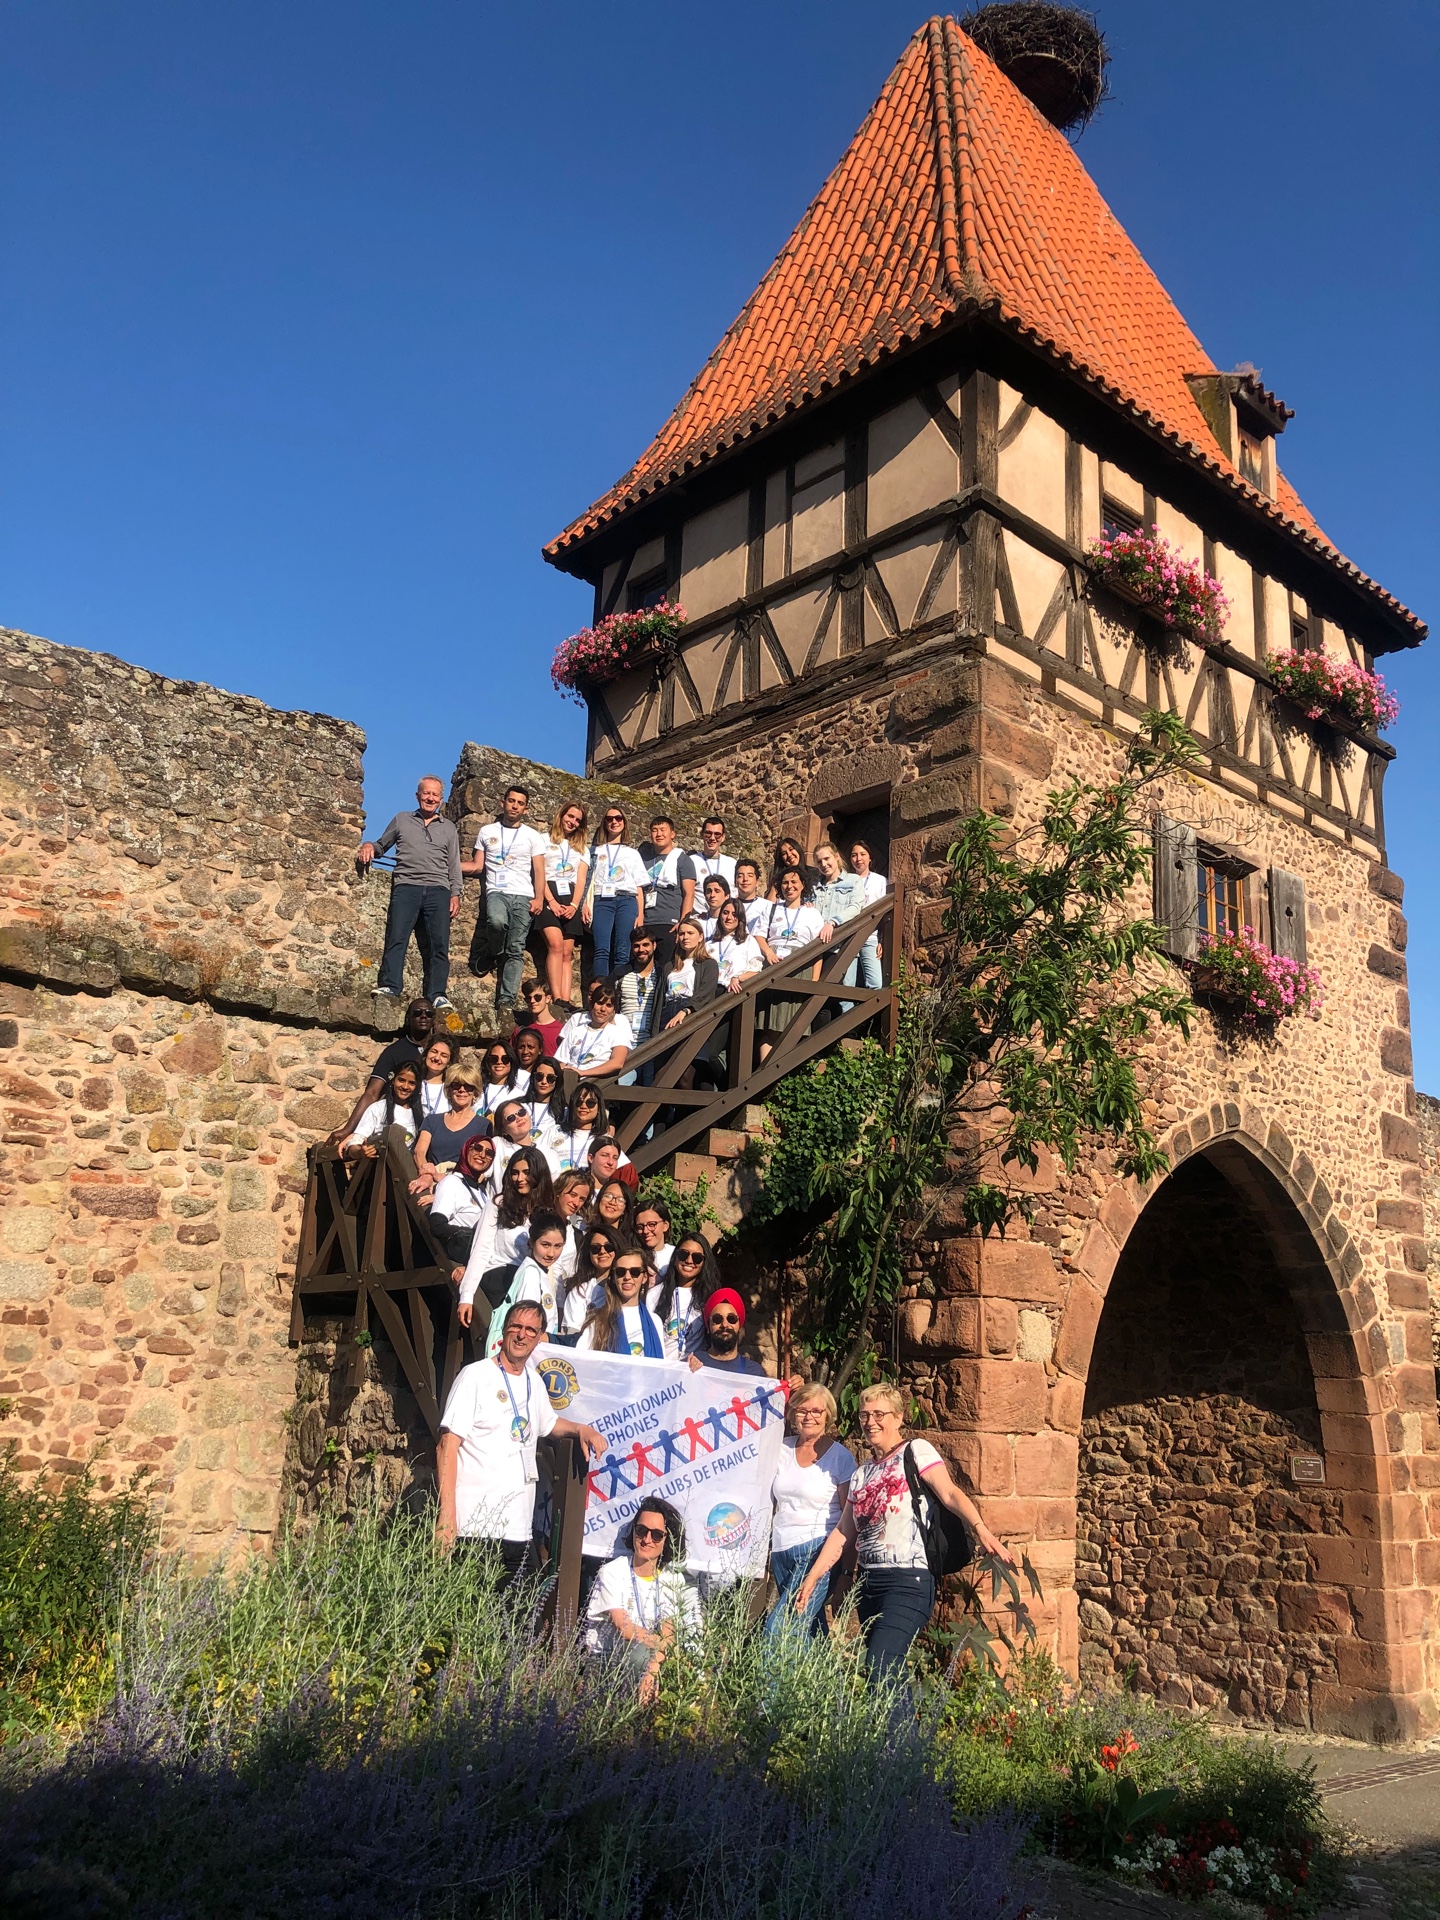 Les châteaux d'Alsace